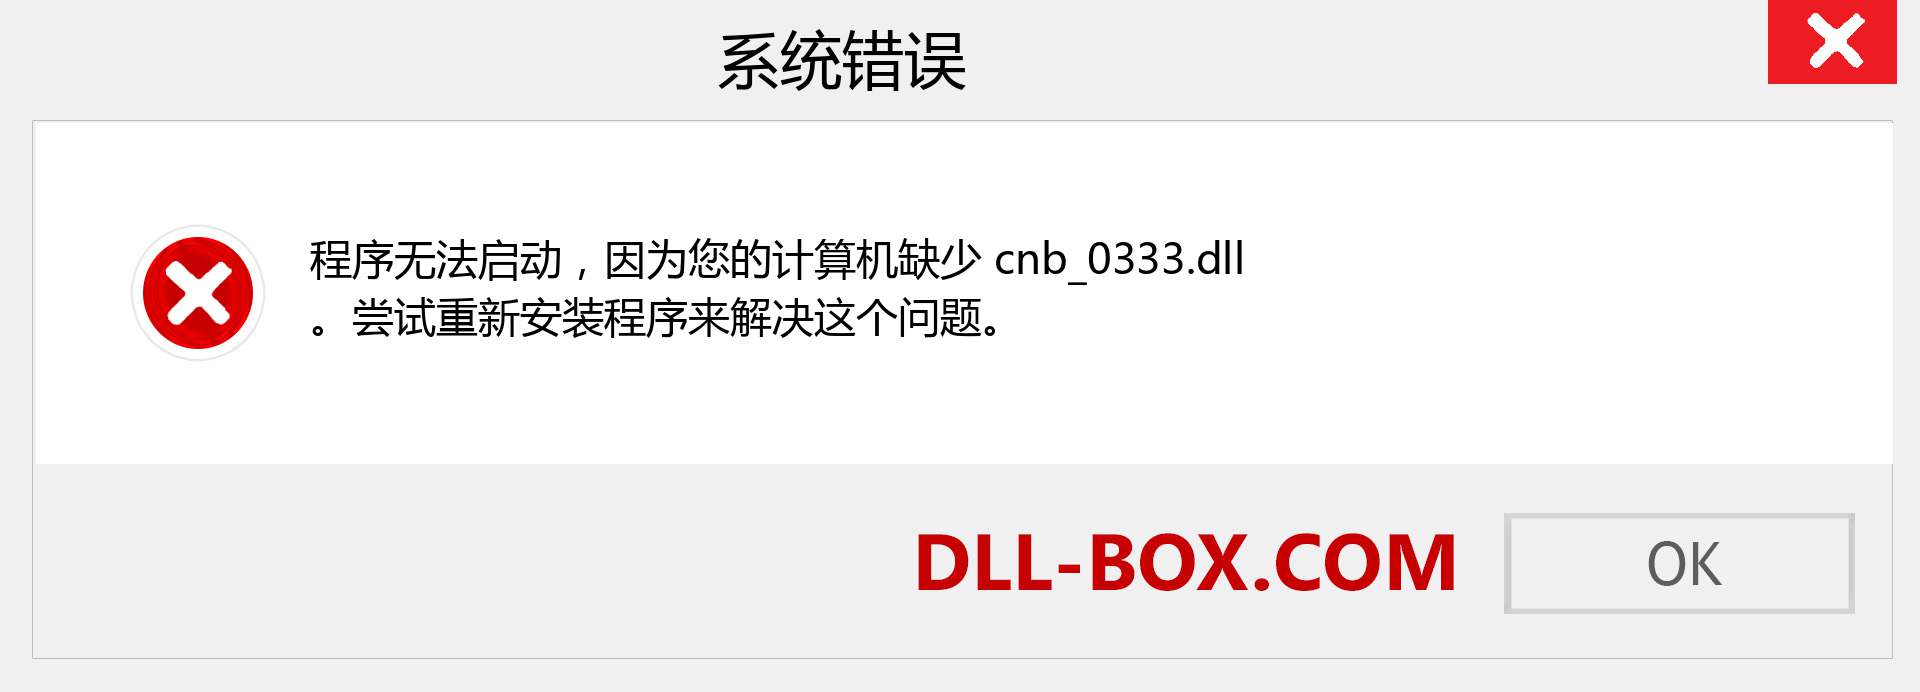 cnb_0333.dll 文件丢失？。 适用于 Windows 7、8、10 的下载 - 修复 Windows、照片、图像上的 cnb_0333 dll 丢失错误